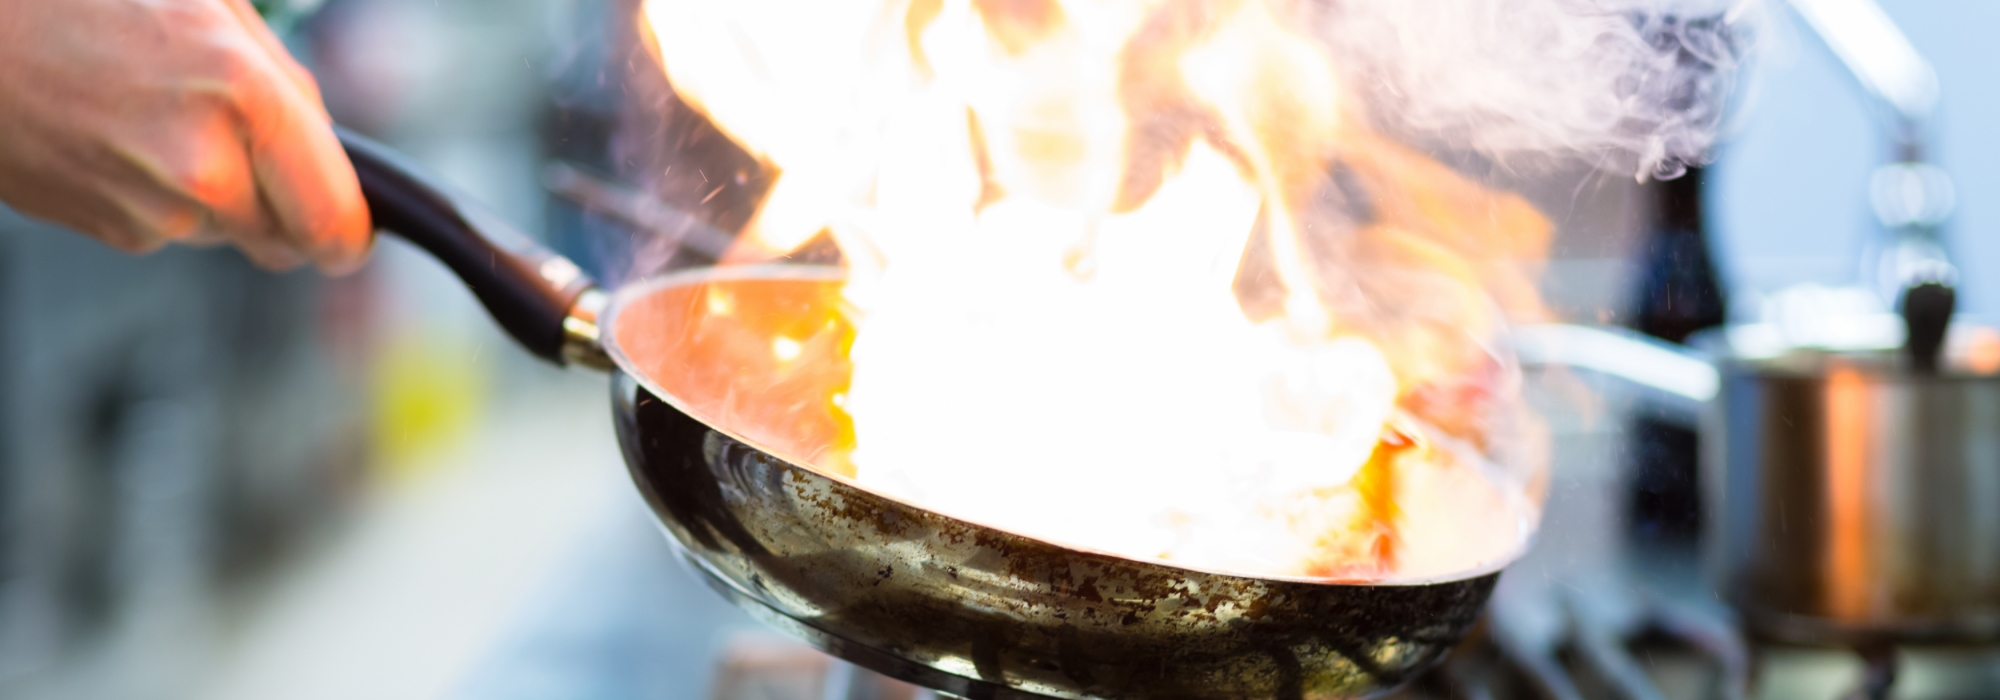 BEET | vuur heet pan beet gas lekker koken